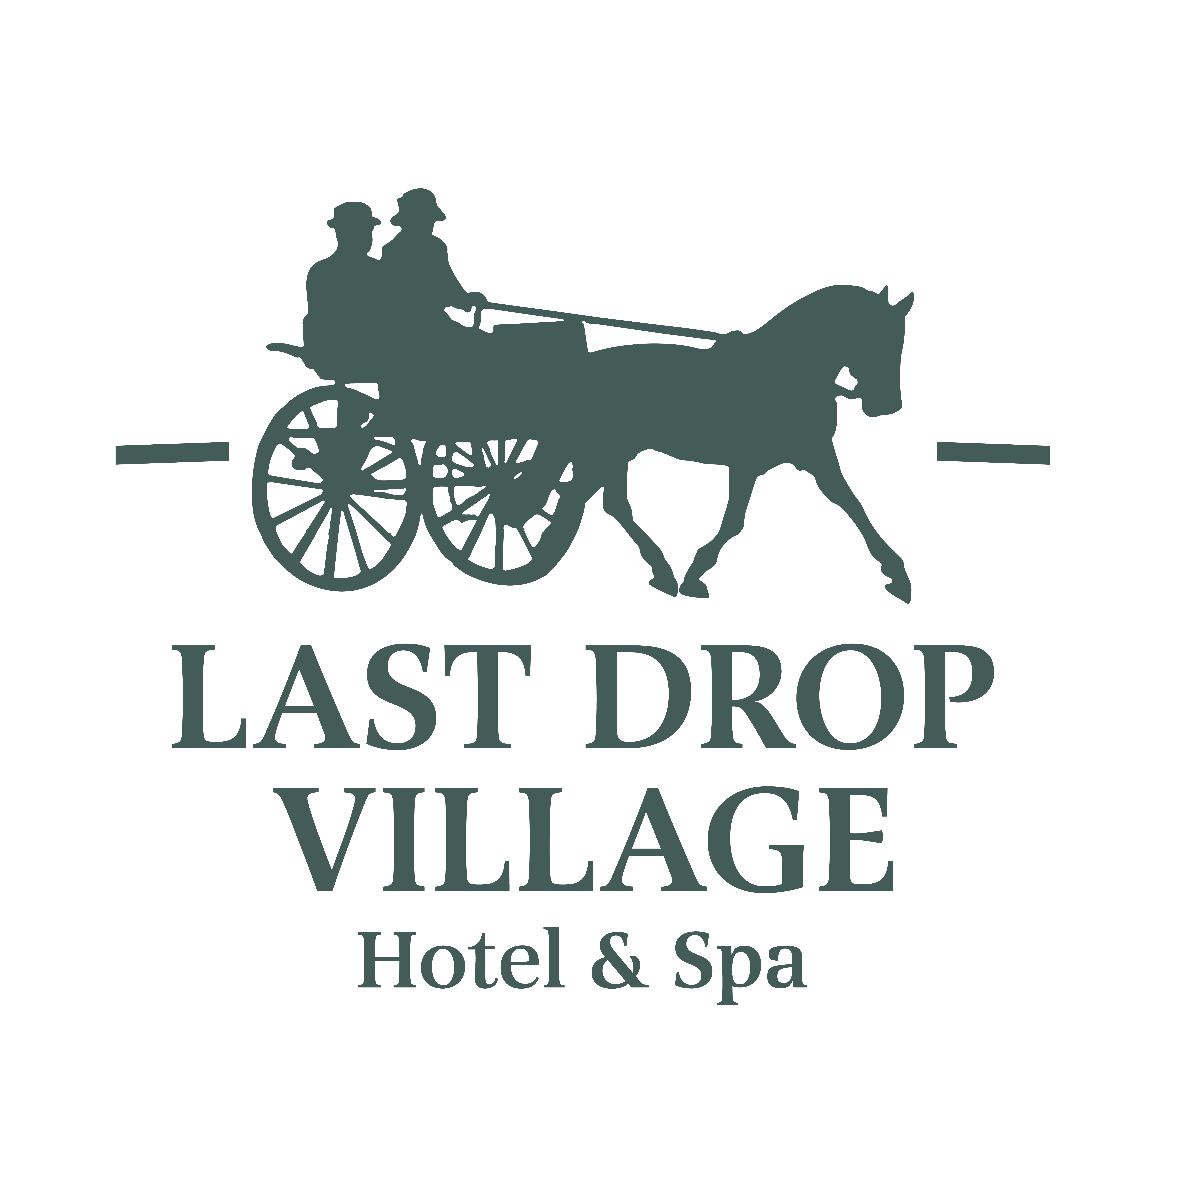 Last Drop Village Hotel & Spa-Image-20